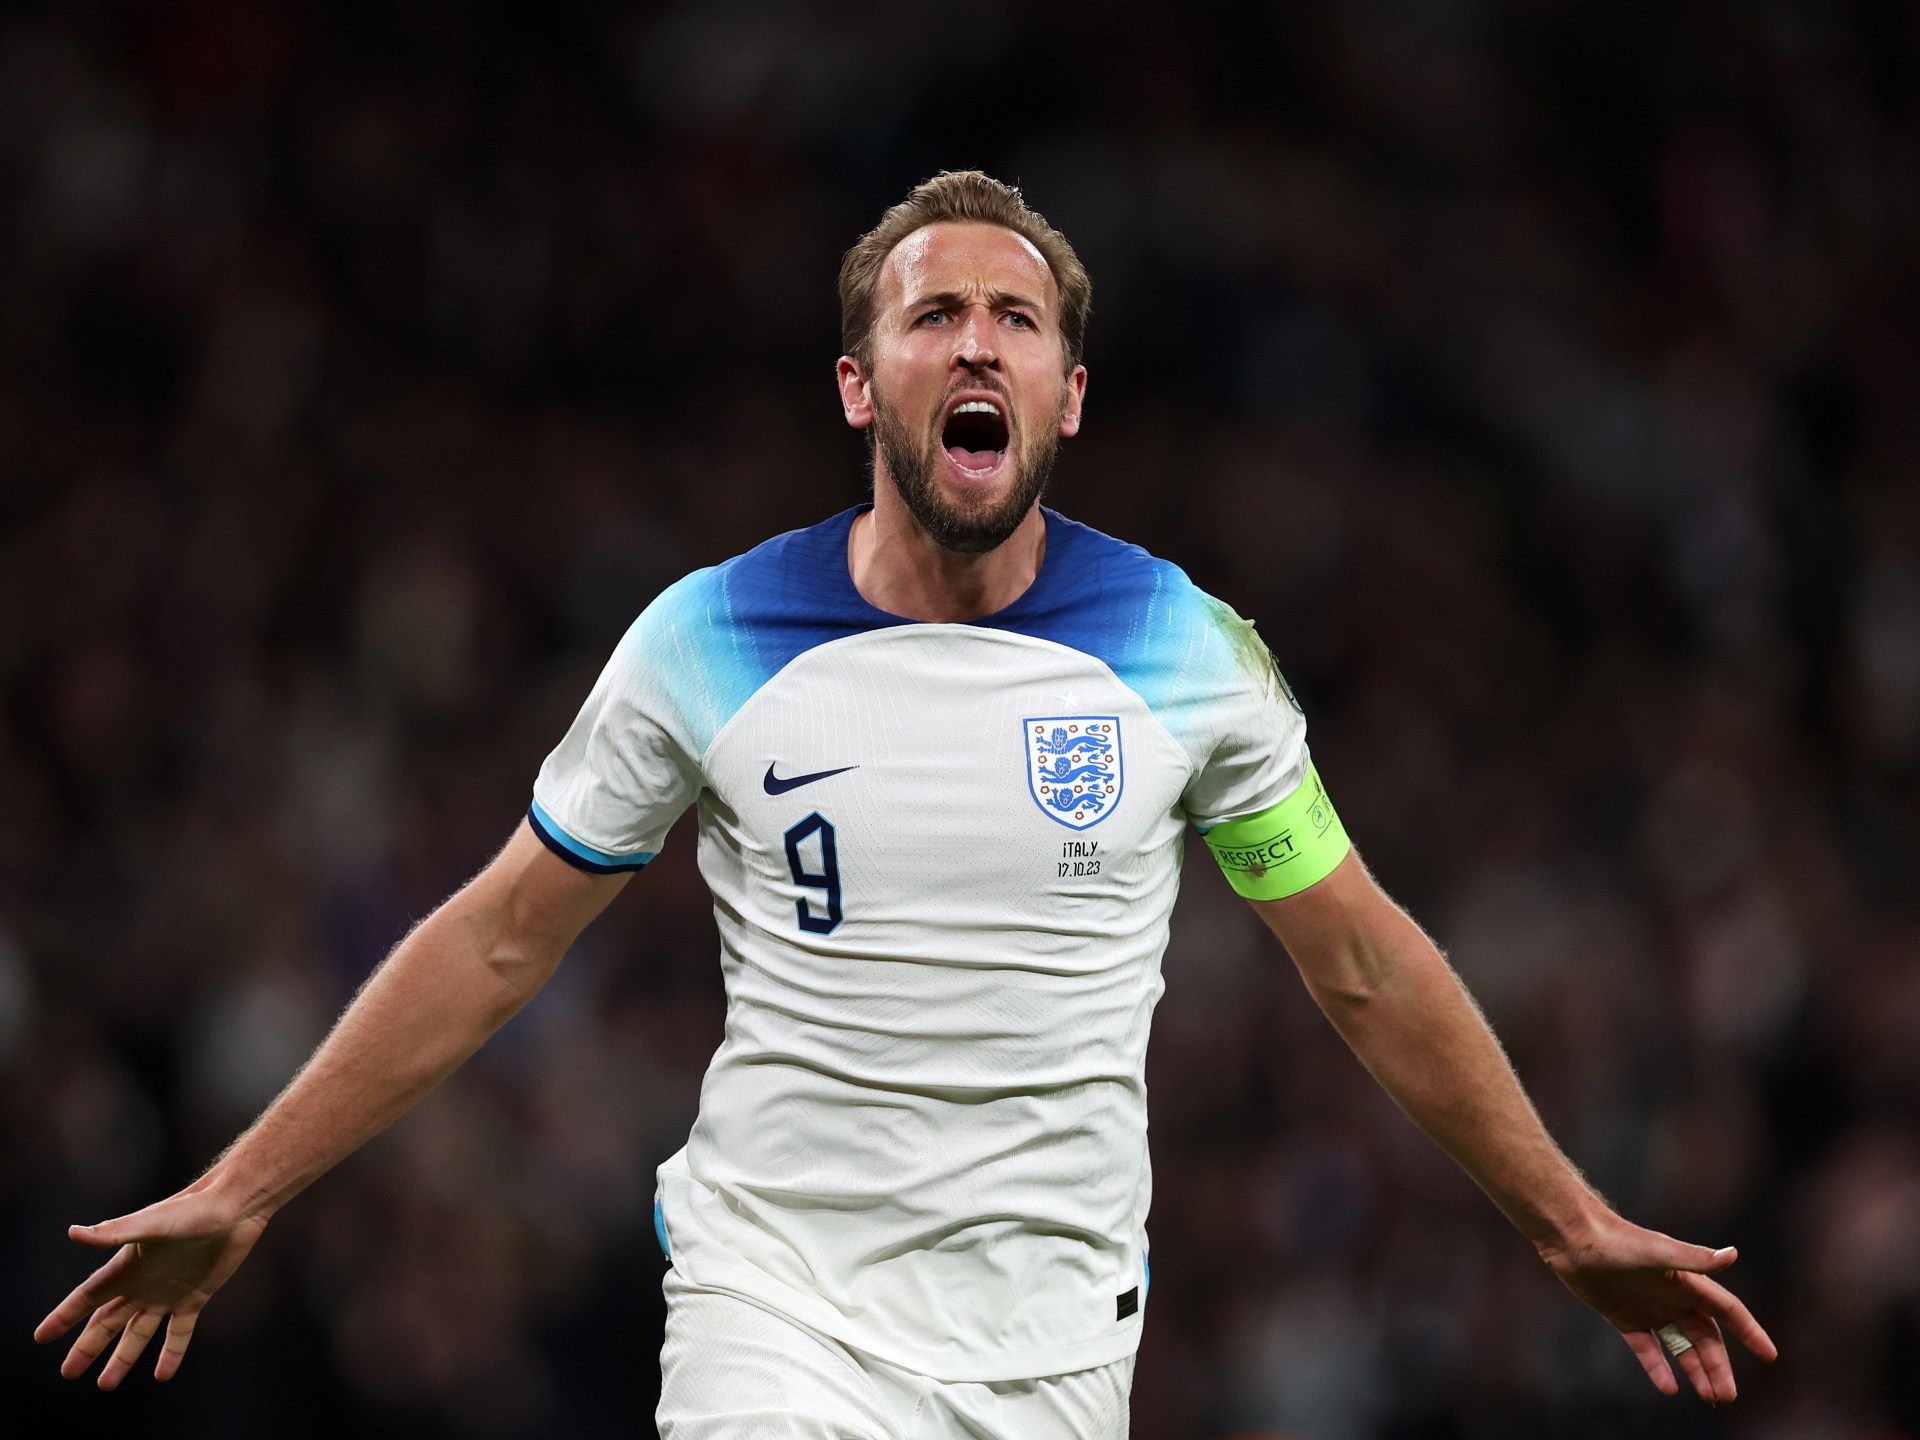 أفضل 13 لاعب كرة قدم إنجليزيا في العالم حاليا | رياضة – البوكس نيوز